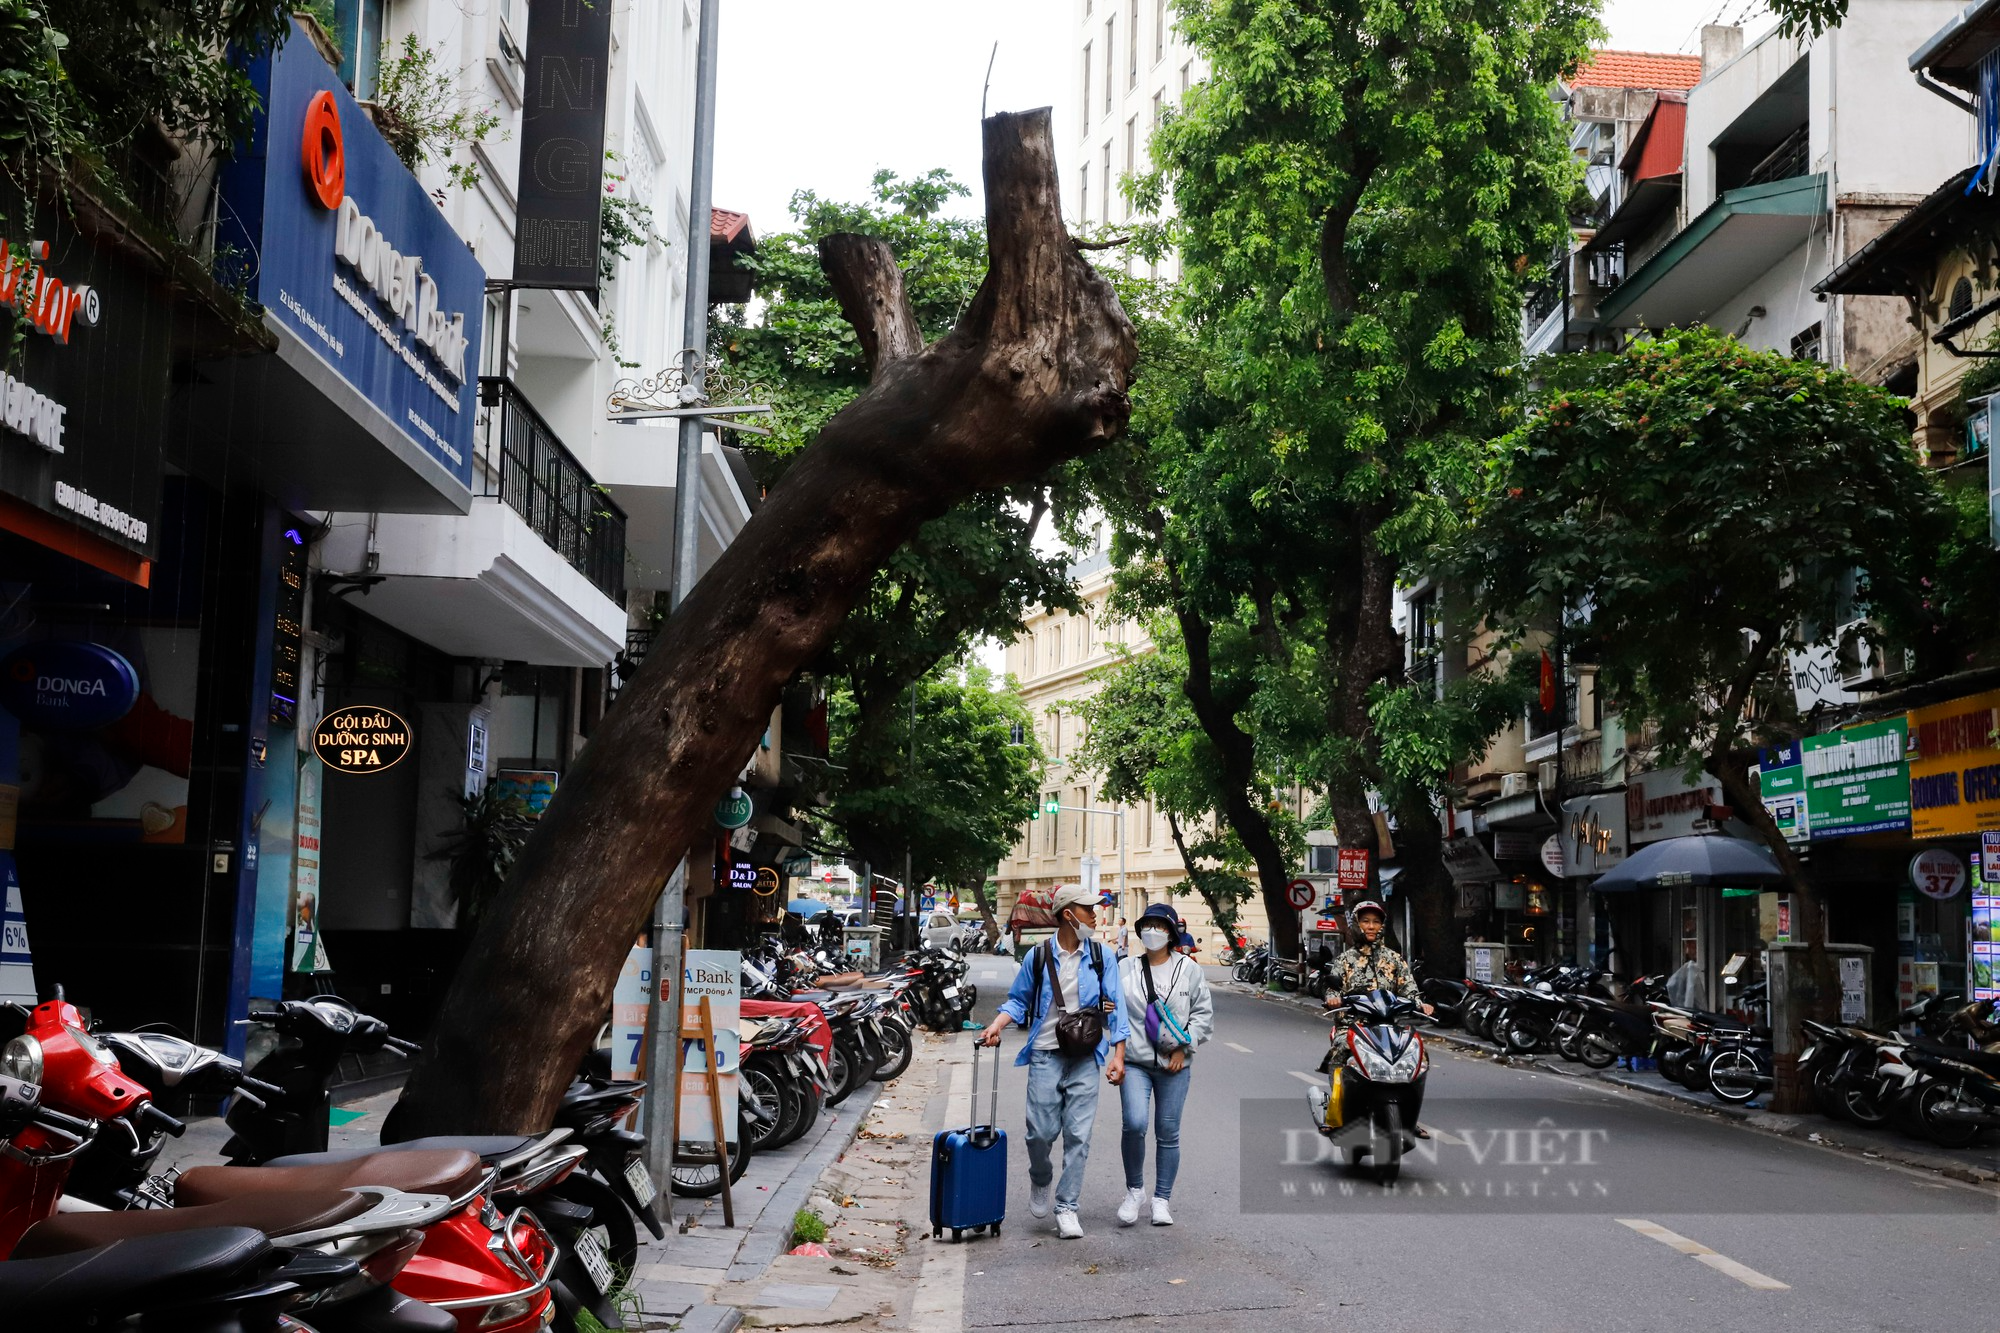 Nhiều cây cổ thụ chết khô trên các tuyến phố Hà Nội, nguy cơ đổ khi giông bão - Ảnh 11.